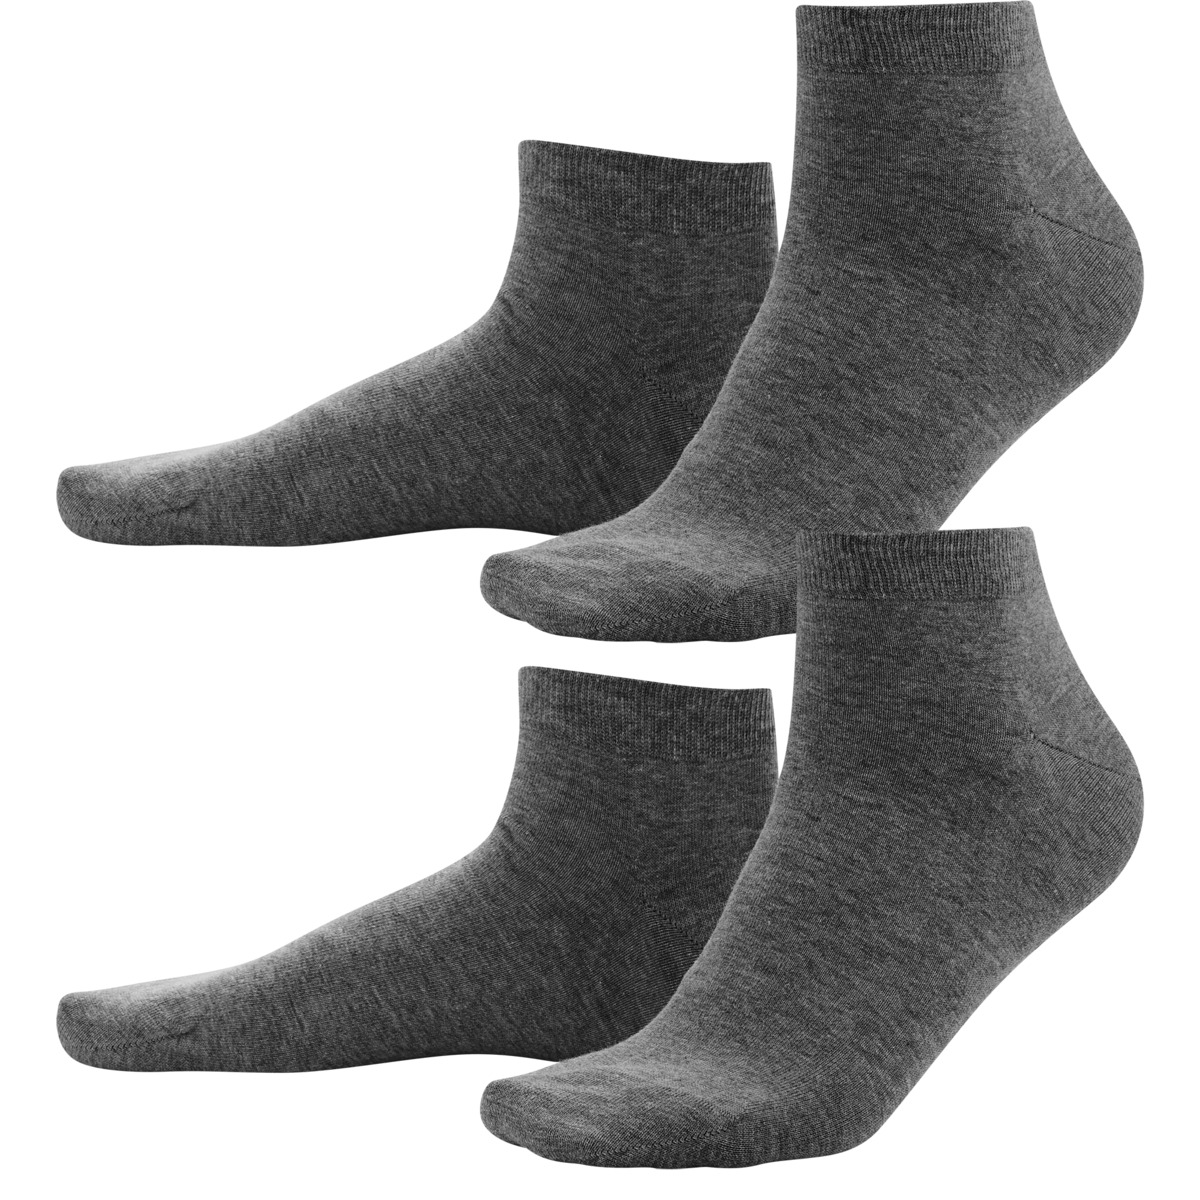 Grey Sneaker Socks, Pack of 2, CURT